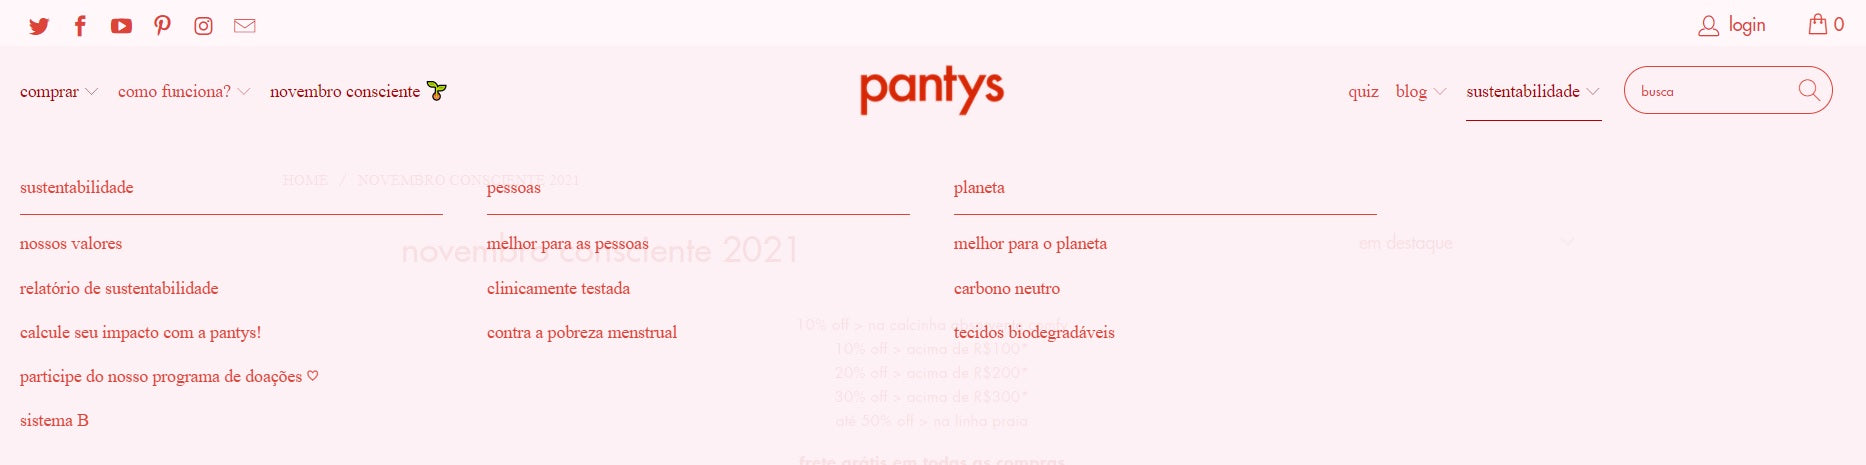 Print da aba "sustentabilidade" do site da Pantys